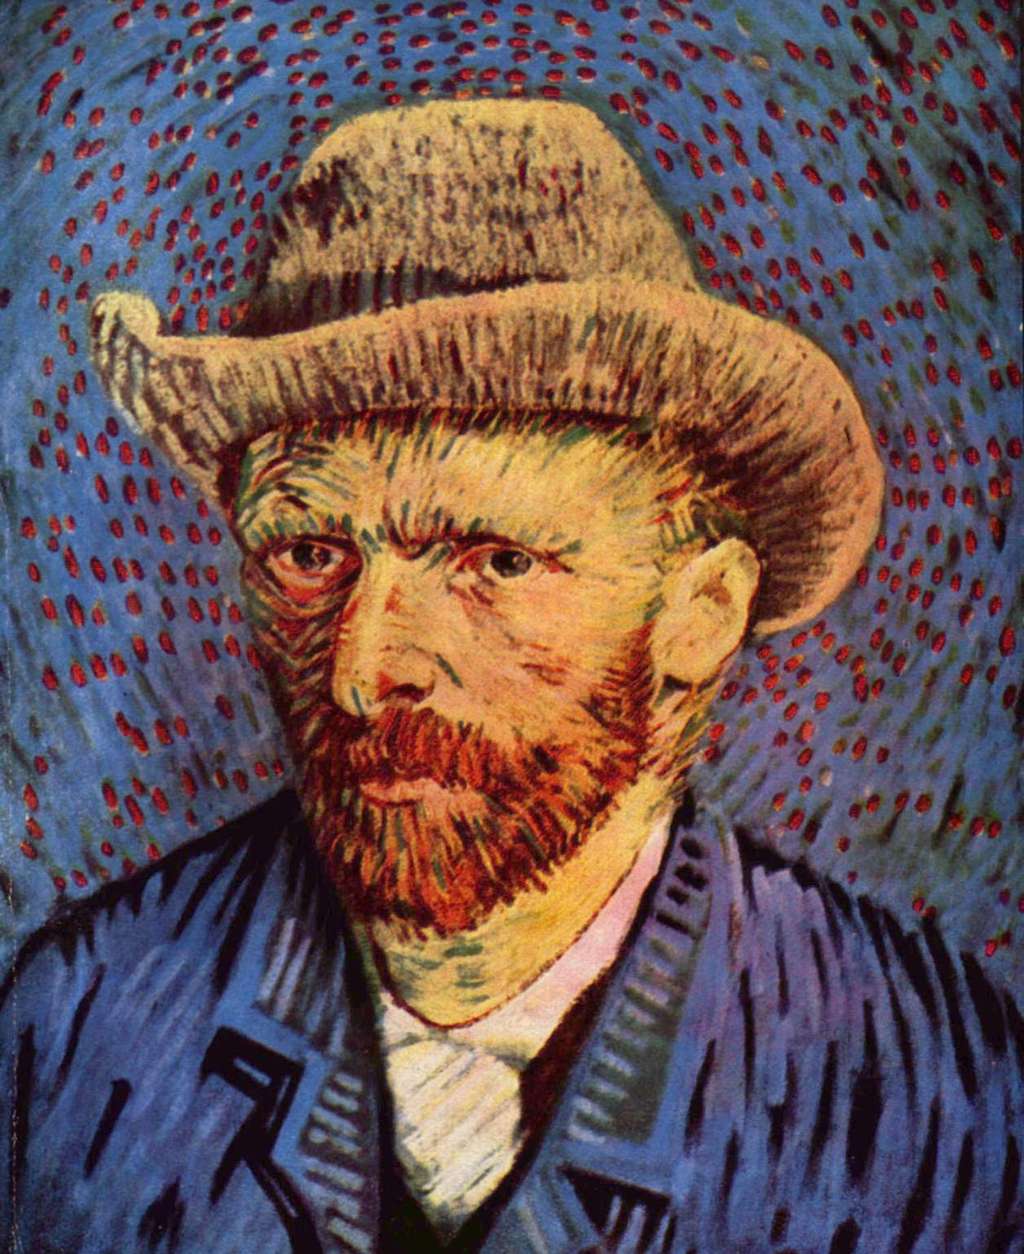 Le peintre Vincent Van Gogh était épileptique, comme de nombreuses autres personnalités telles que Jules César, Molière et Gustave Flaubert. Être touché par cette maladie n’empêche donc pas d’accomplir de grandes choses. © Wikimedia Commons, DP